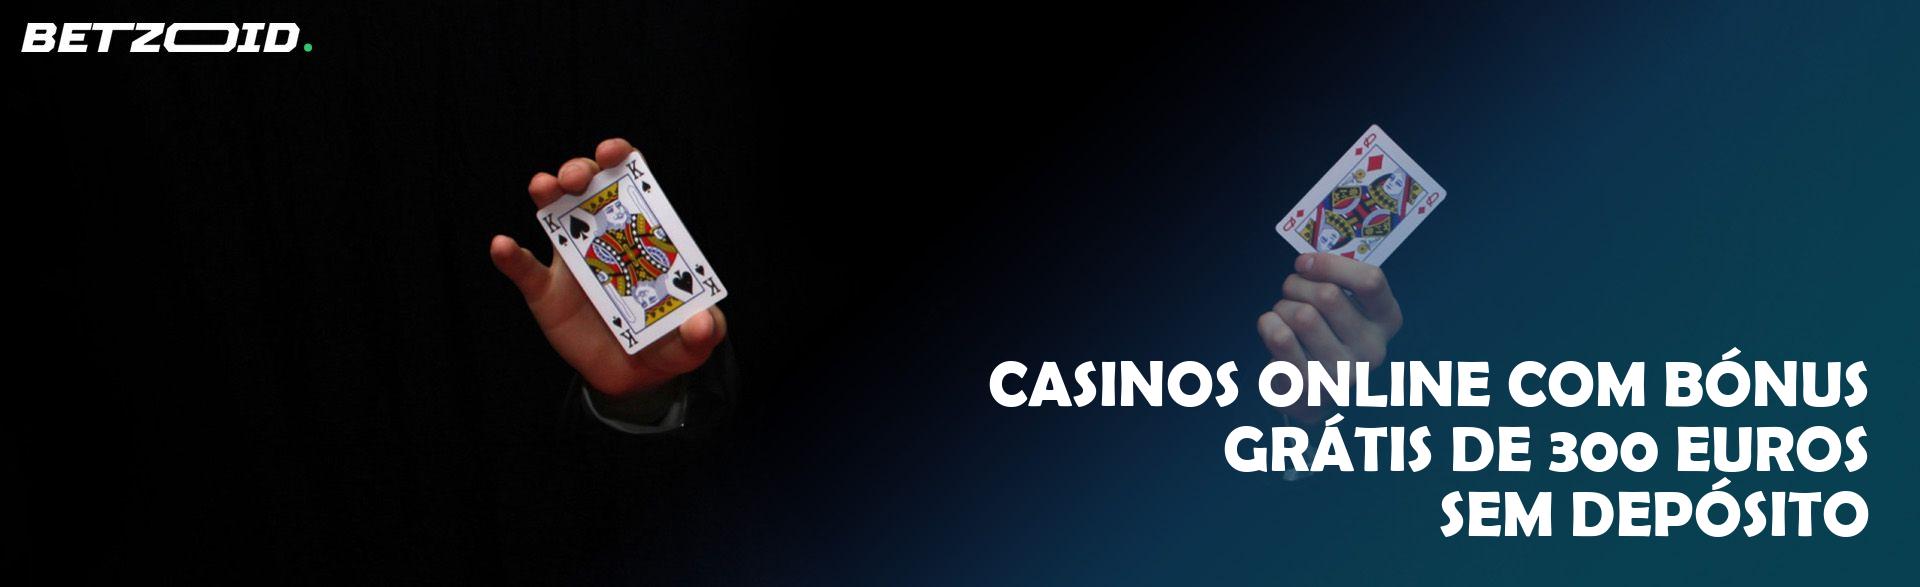 Casinos Online com Bónus Grátis de 300 Euros sem Depósito.